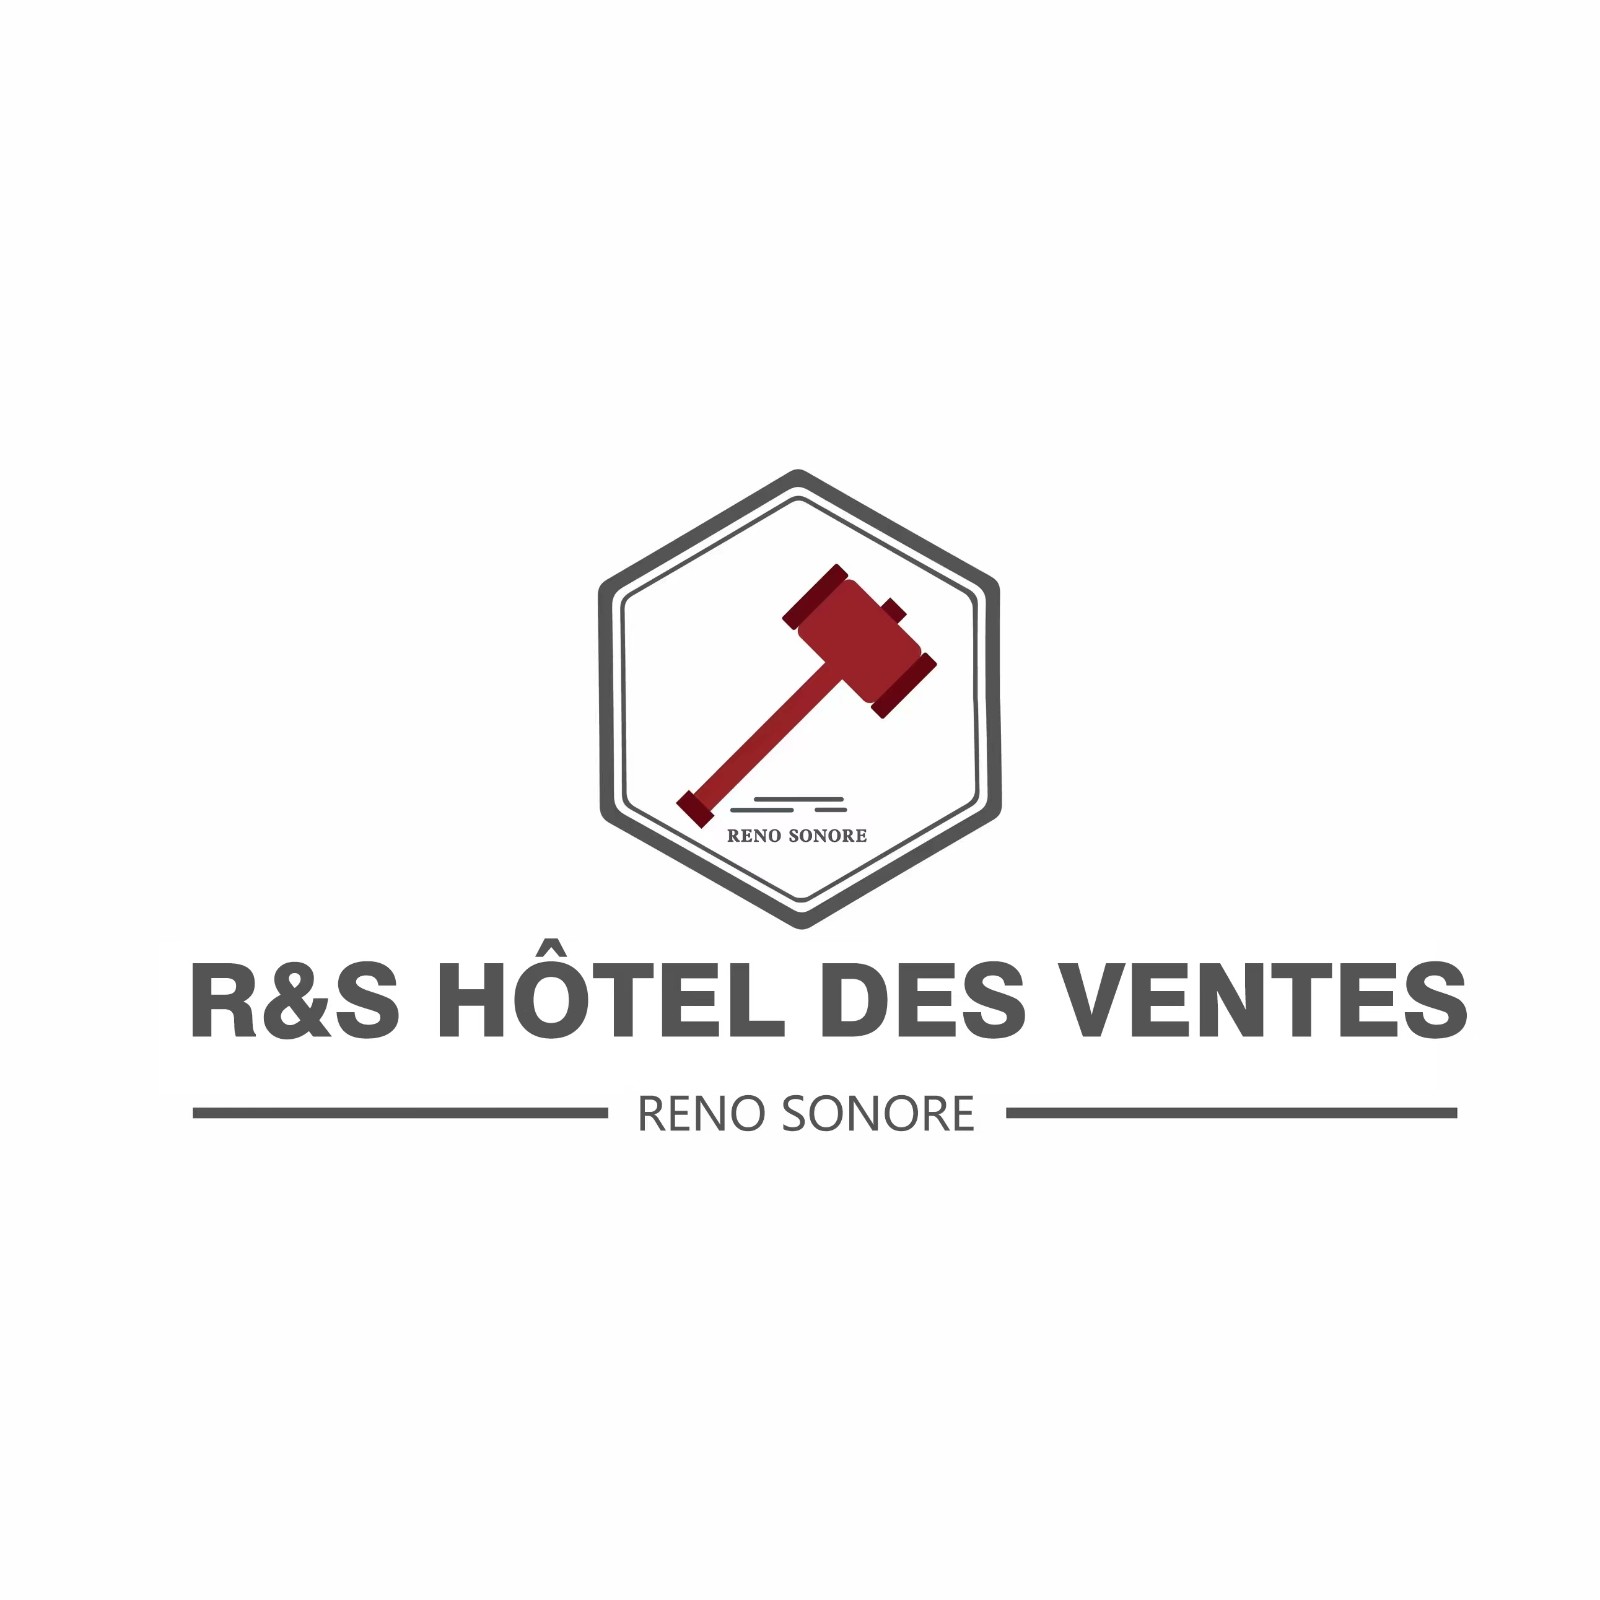 R&S HÔTEL DES VENTES